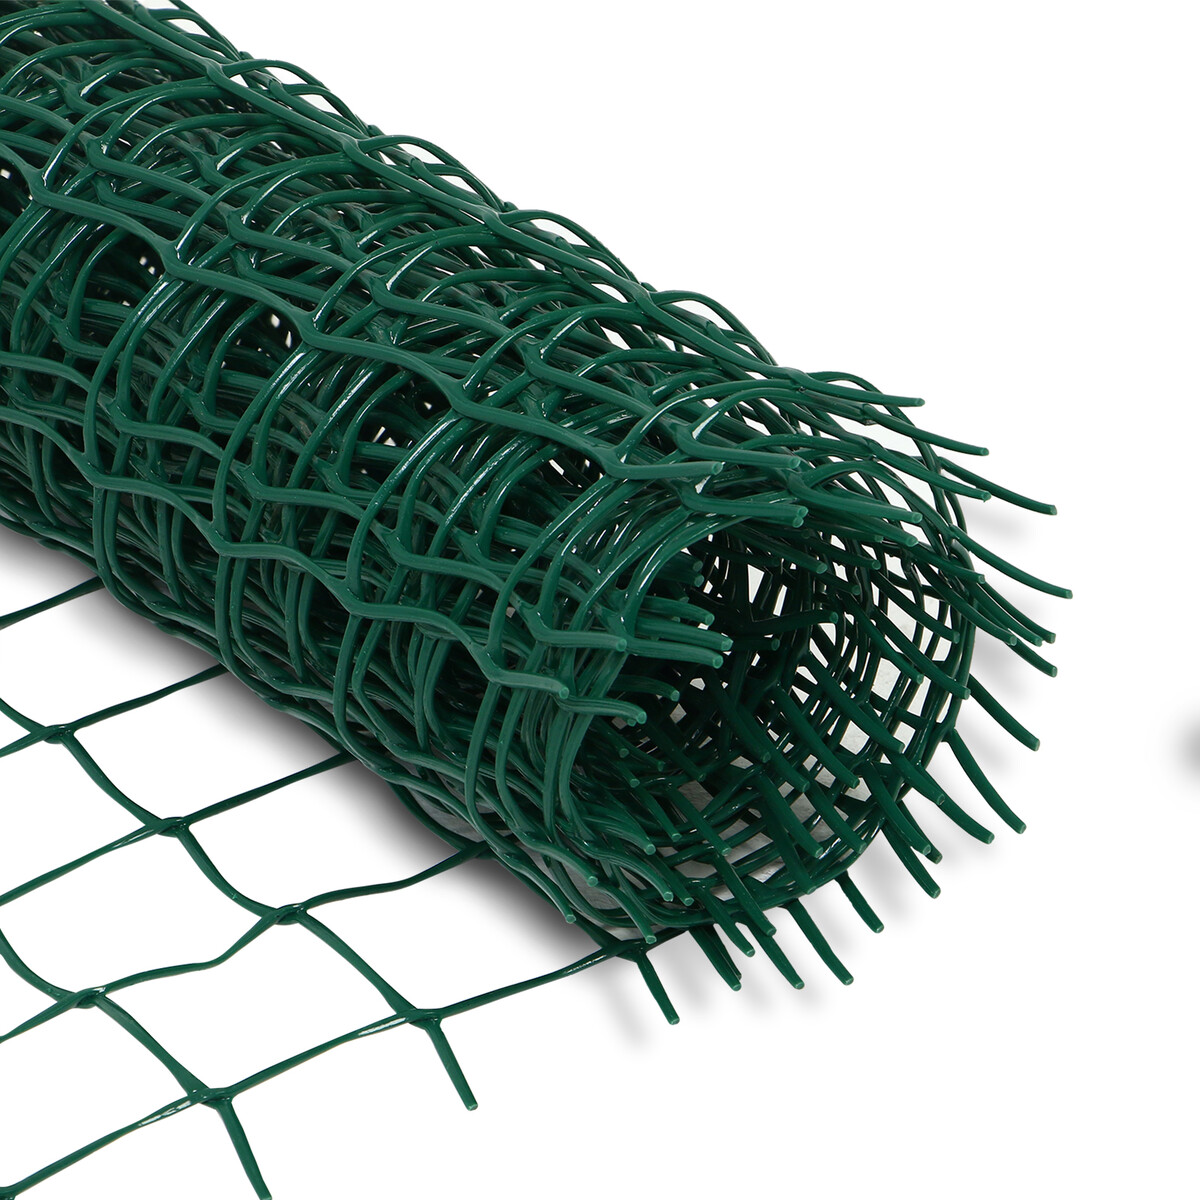 Сетка садовая, 0,5 × 5 м, ячейка квадрат 50 × 50 мм, пластиковая, зеленая, greengo сетка затеняющая полиэтилен 300х500 см 80% с клипсая зеленая